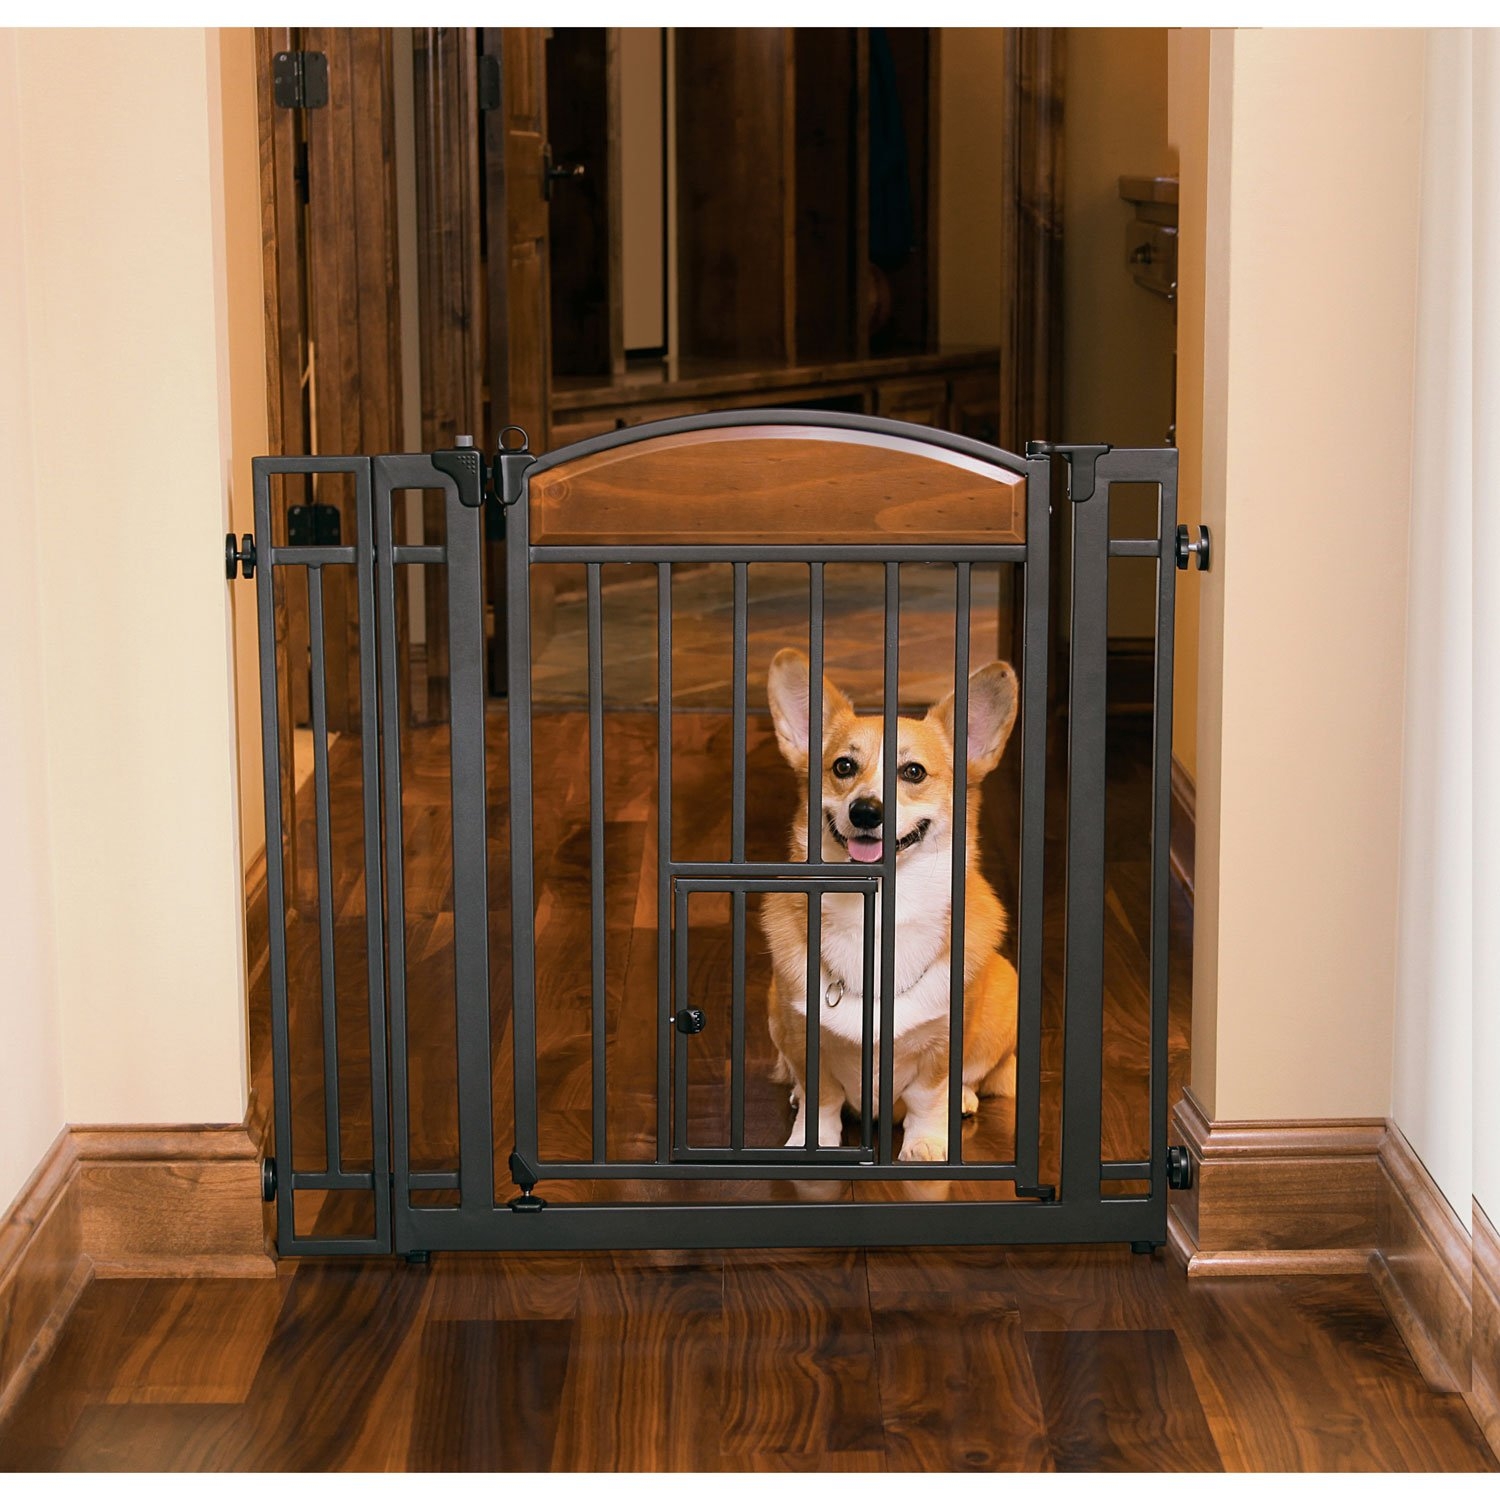 pet gate with cat door